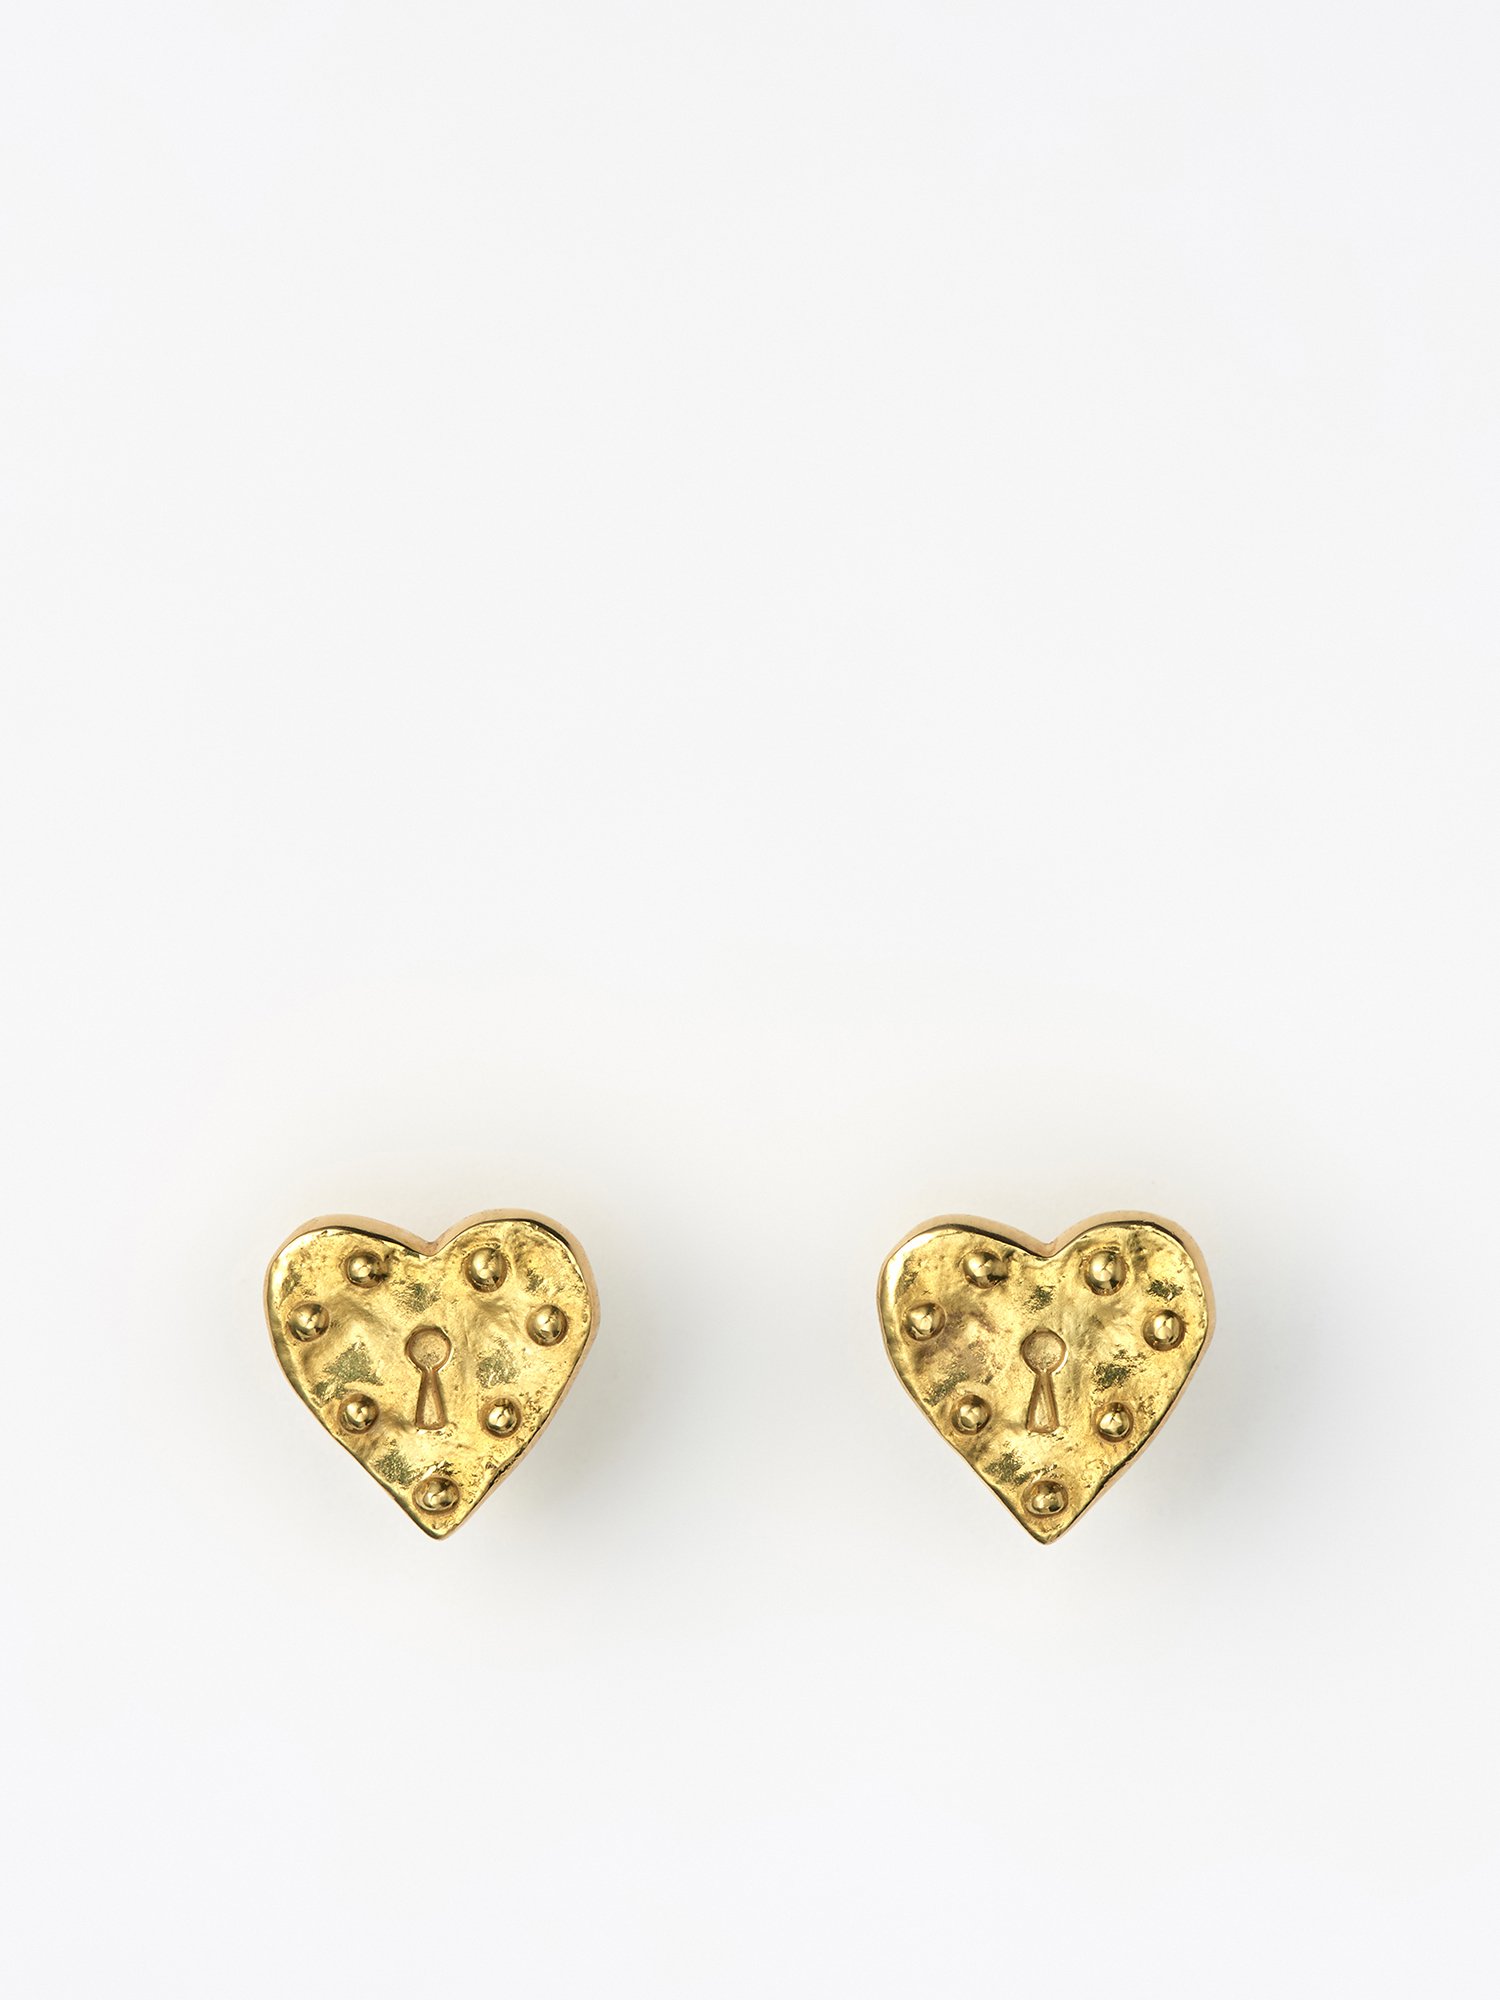 AMOUR / Heart lock earrings